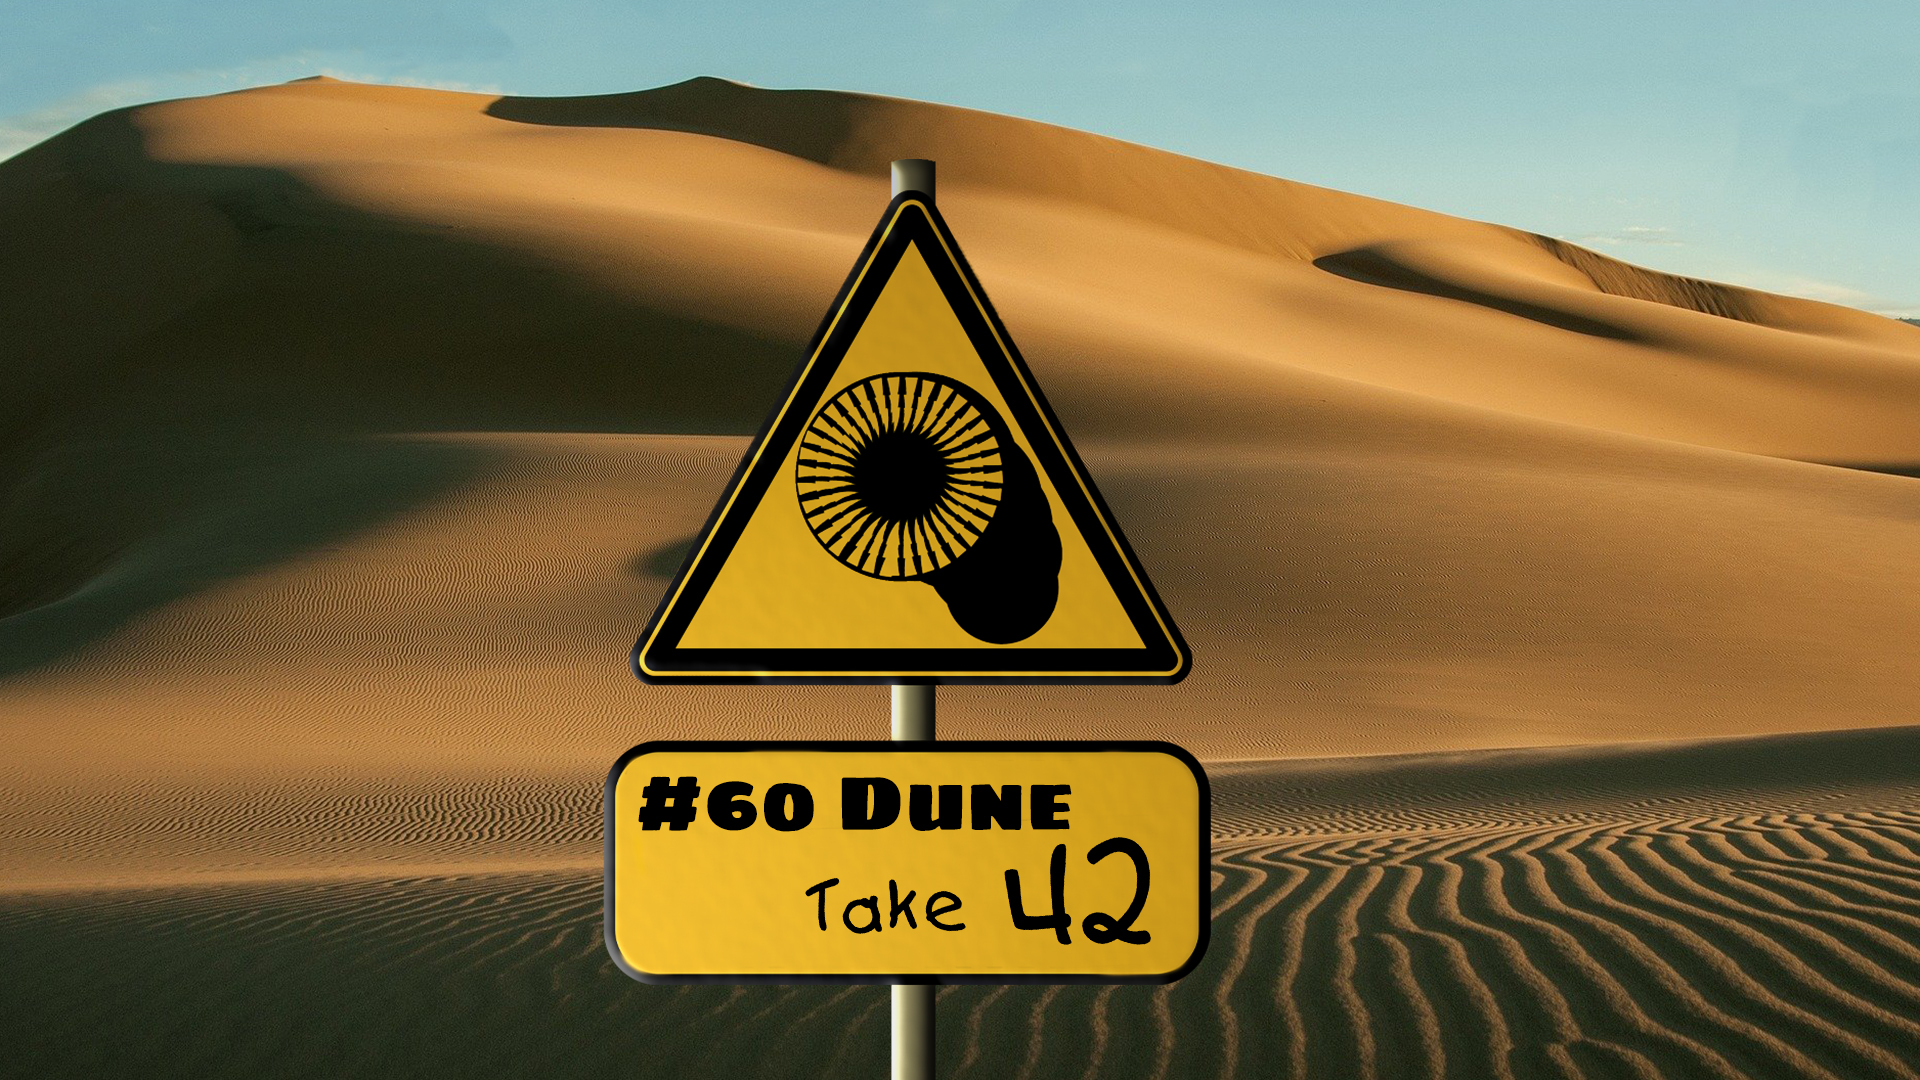 Dune @ Querfunk